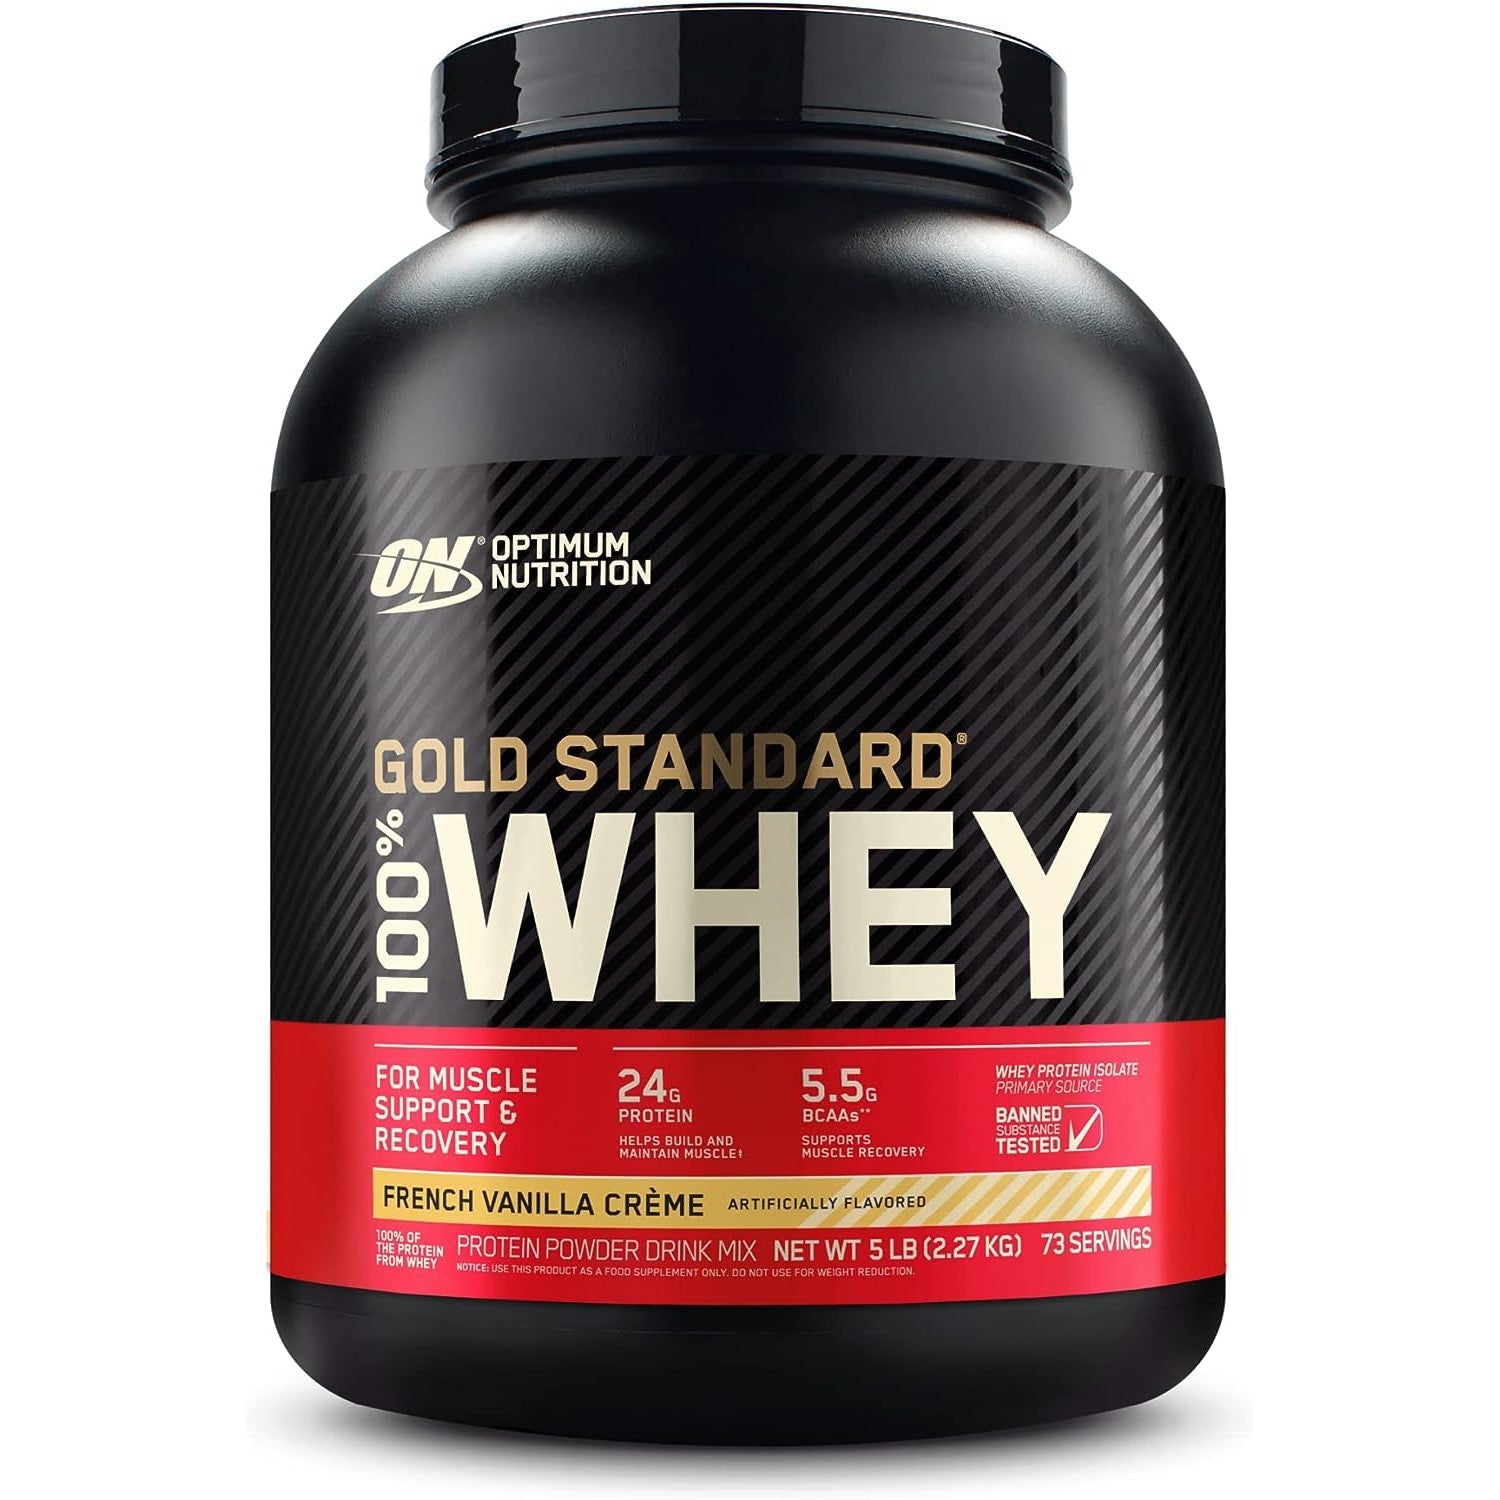 Optimum Nutrition Gold Standard 100% Whey Protein Powder French Vanilla Creme 2.27KG